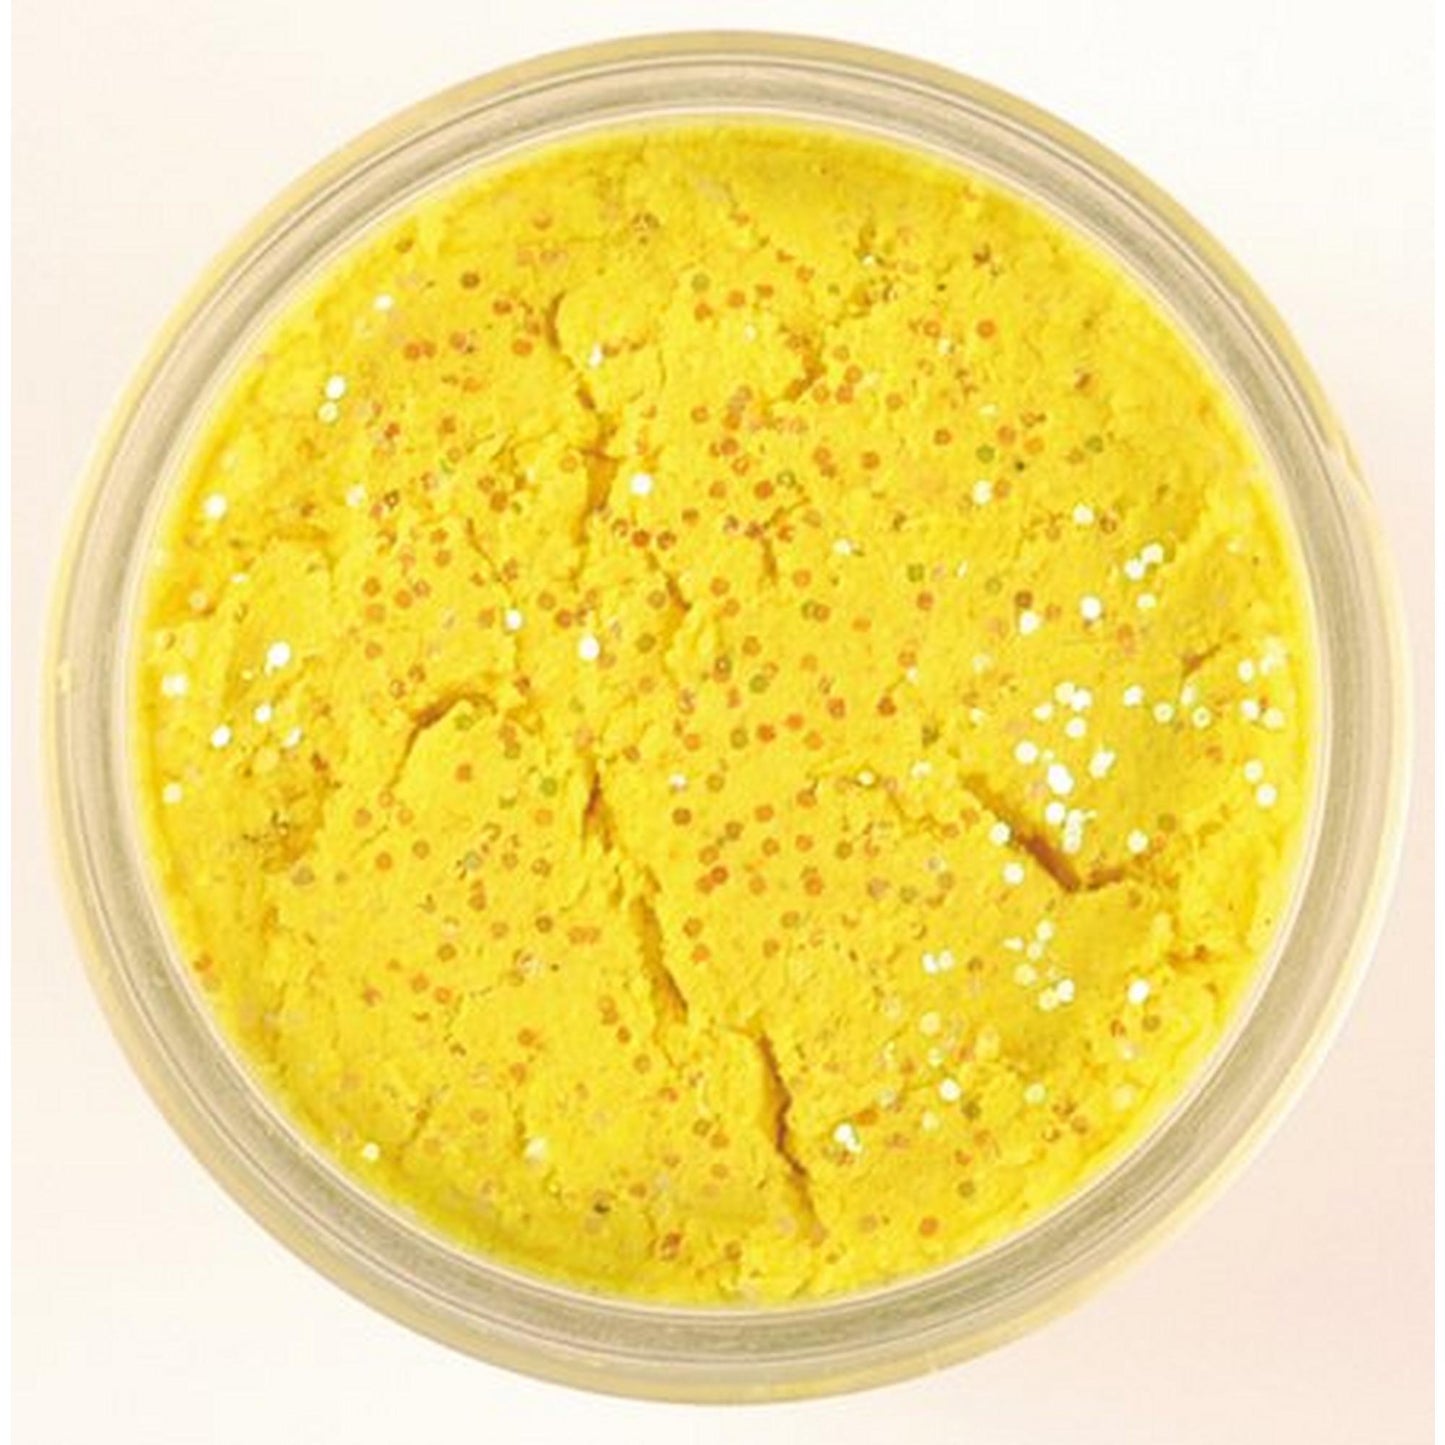 Berkley Glitter Trout Bait Garlic Scent - Yellow